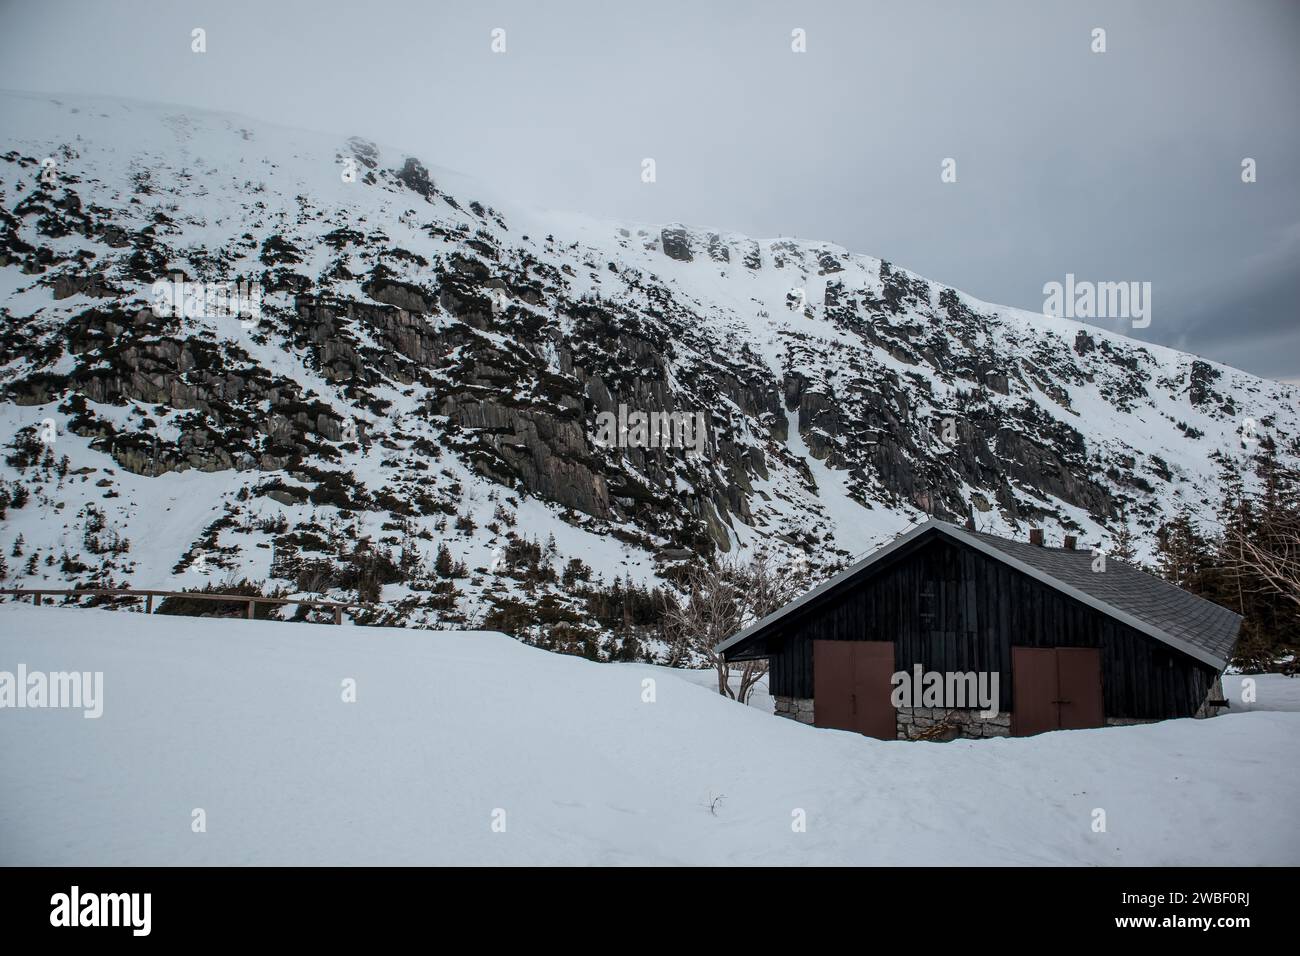 Eine einsame Hütte befindet sich unter einer zerklüfteten, schneebedeckten Berglandschaft unter einem bewölkten Himmel. Polen, Karpacz, Karkonosze Stockfoto